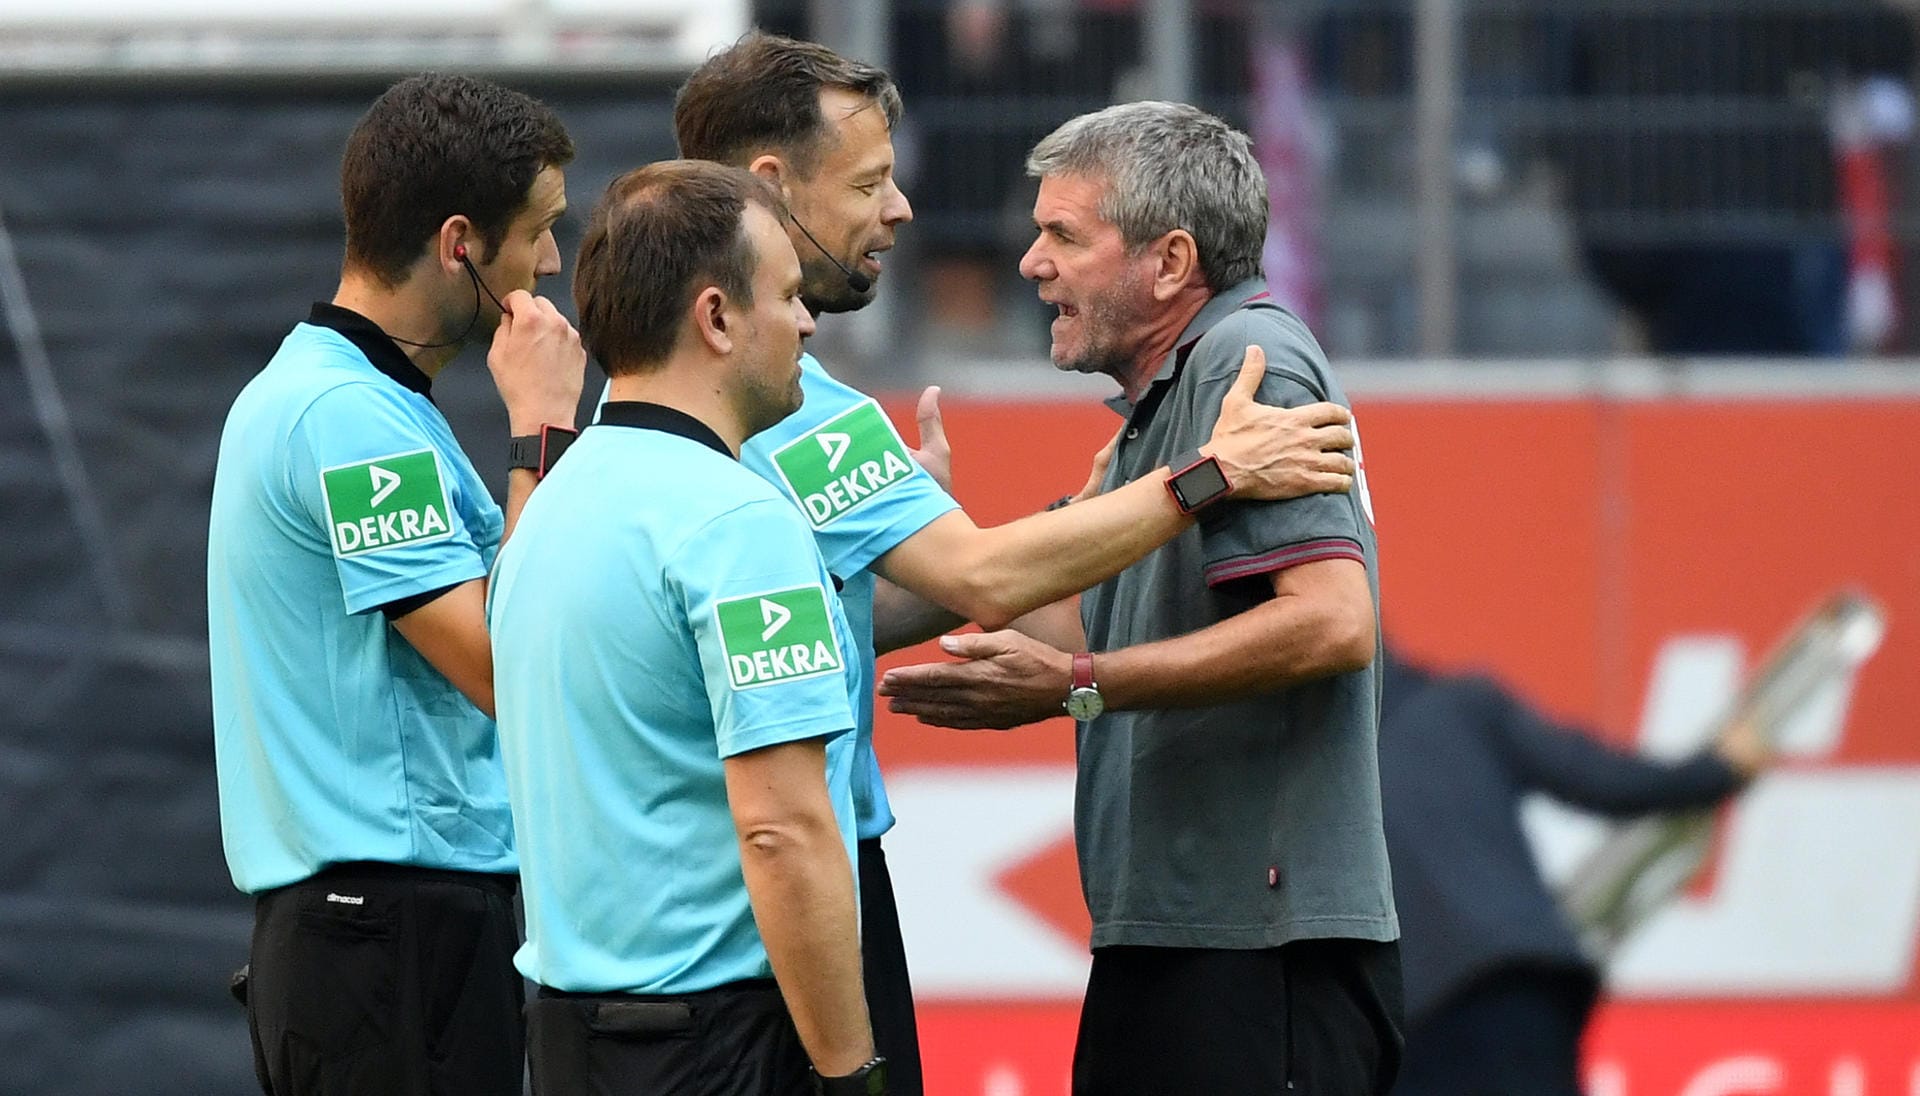 Düsseldorf-Trainer Funkel beschwert sich nach der Niederlage gegen Augsburg bei den Assistenten Gomiak, Günsch und Schiedsrichter Schmidt. Er hatte vor dem ersten Augsburg-Treffer ein Foul an einem Düsseldorfer gesehen.